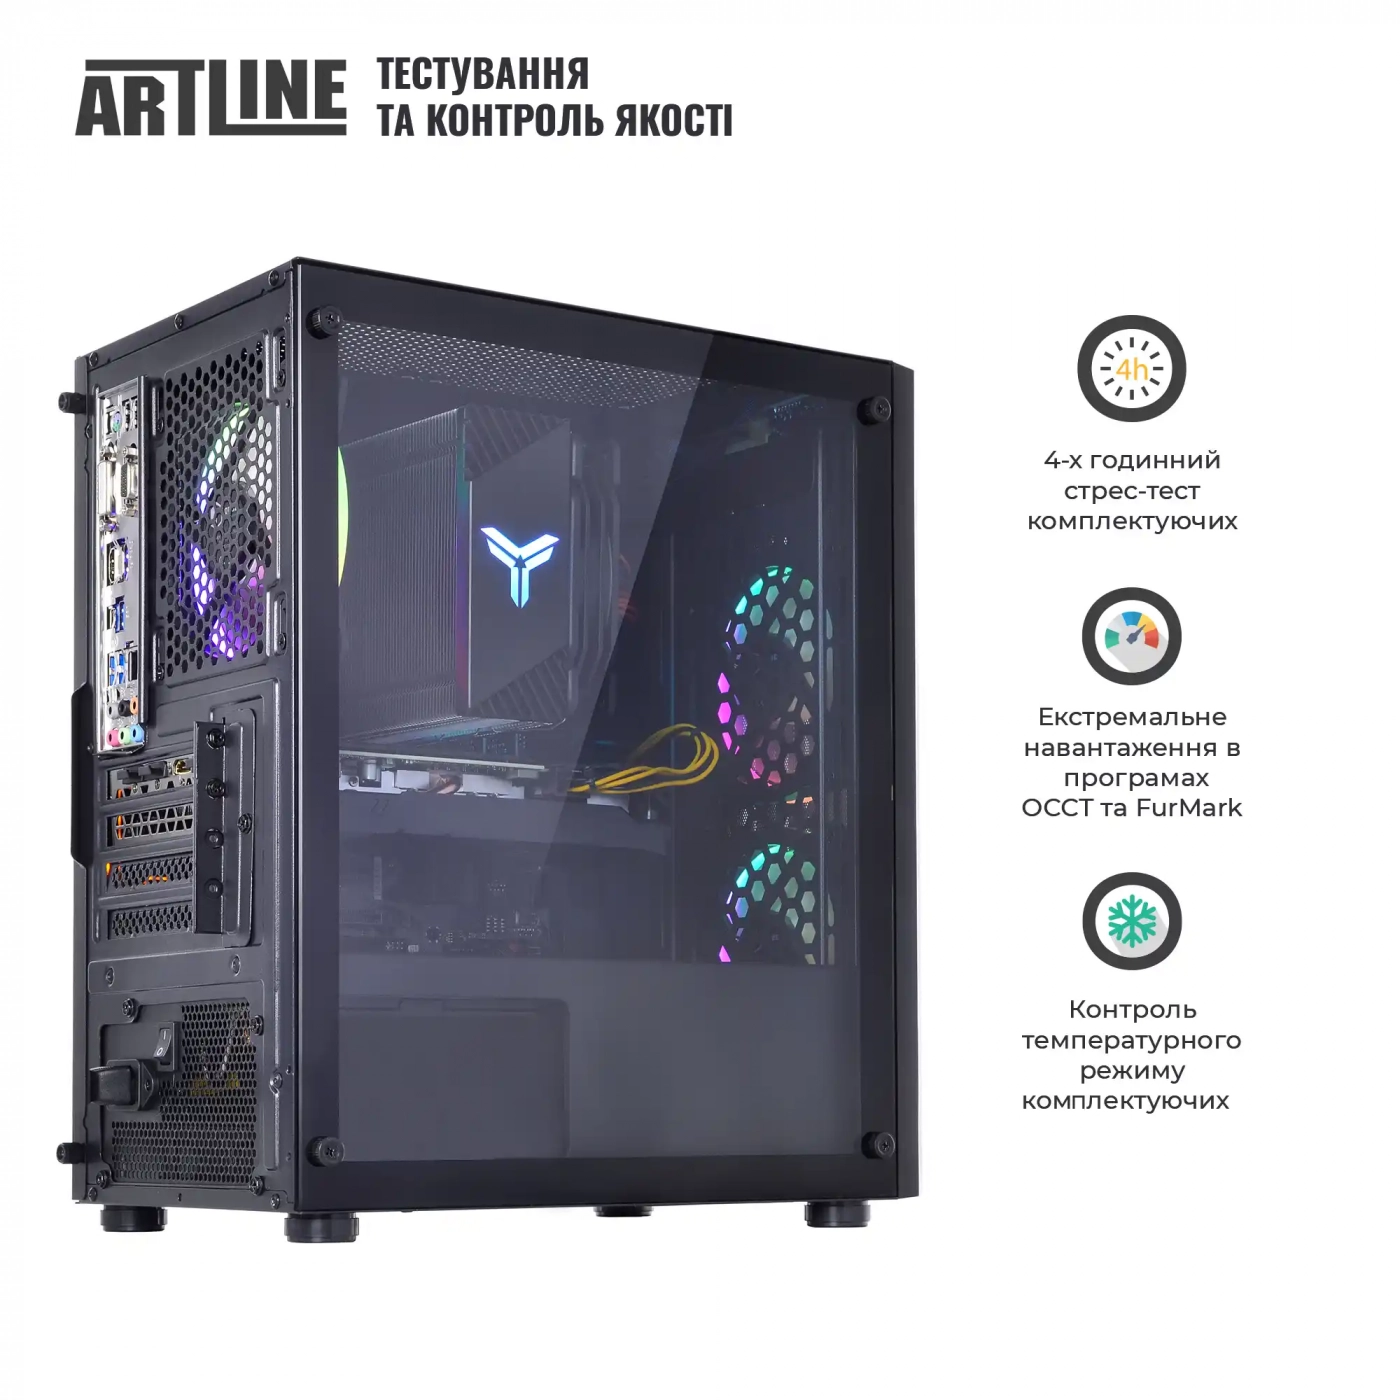 Купить Компьютер ARTLINE Gaming X43v36 - фото 7